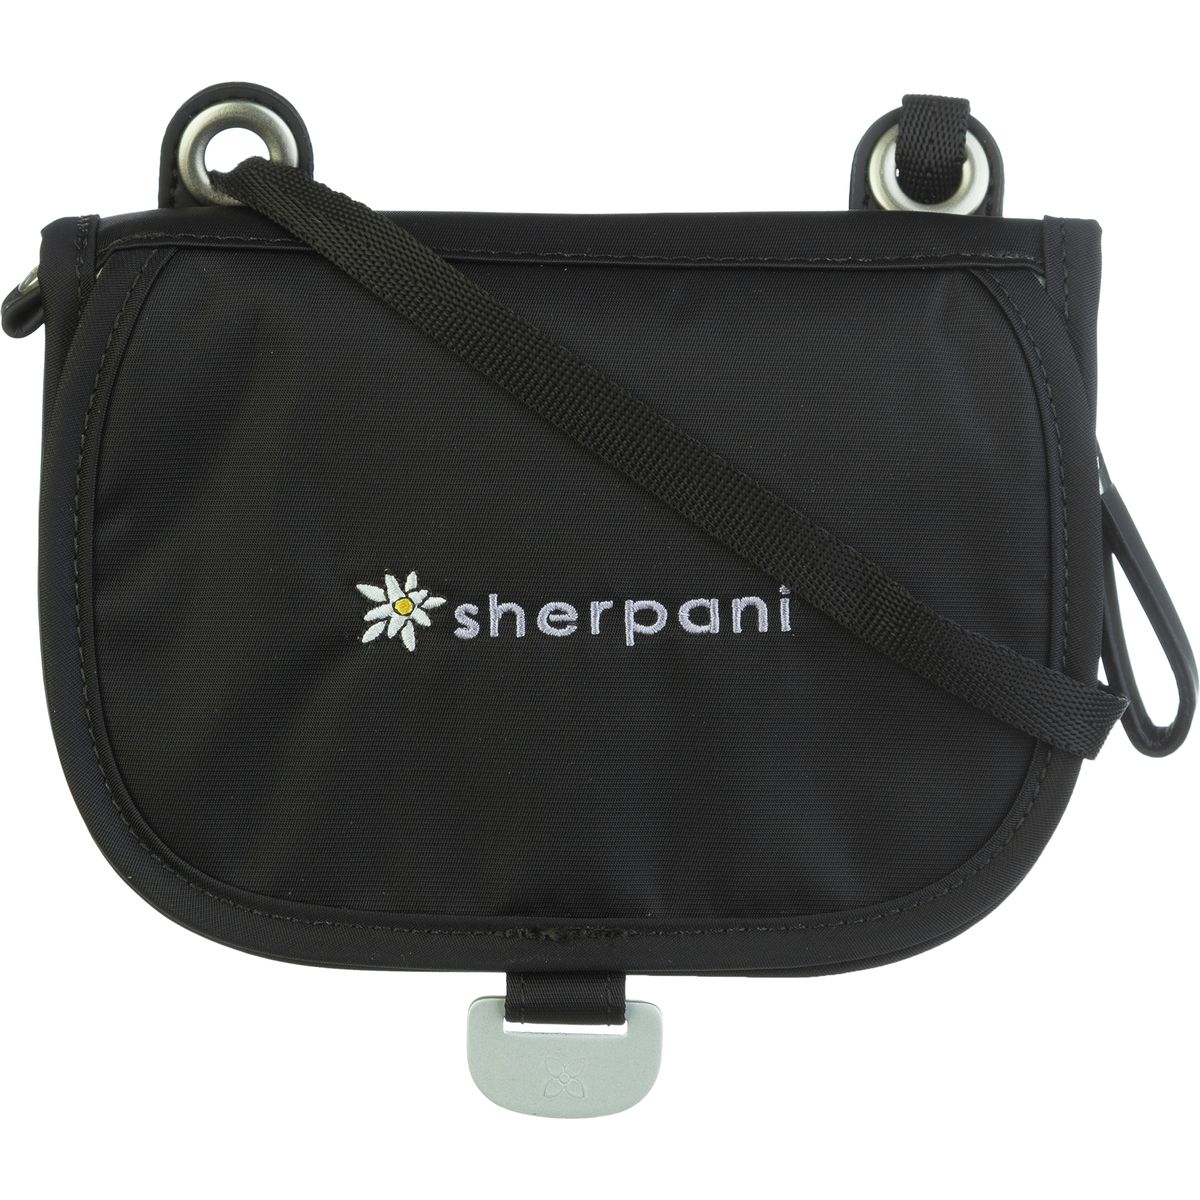 sherpani crossbody wallet